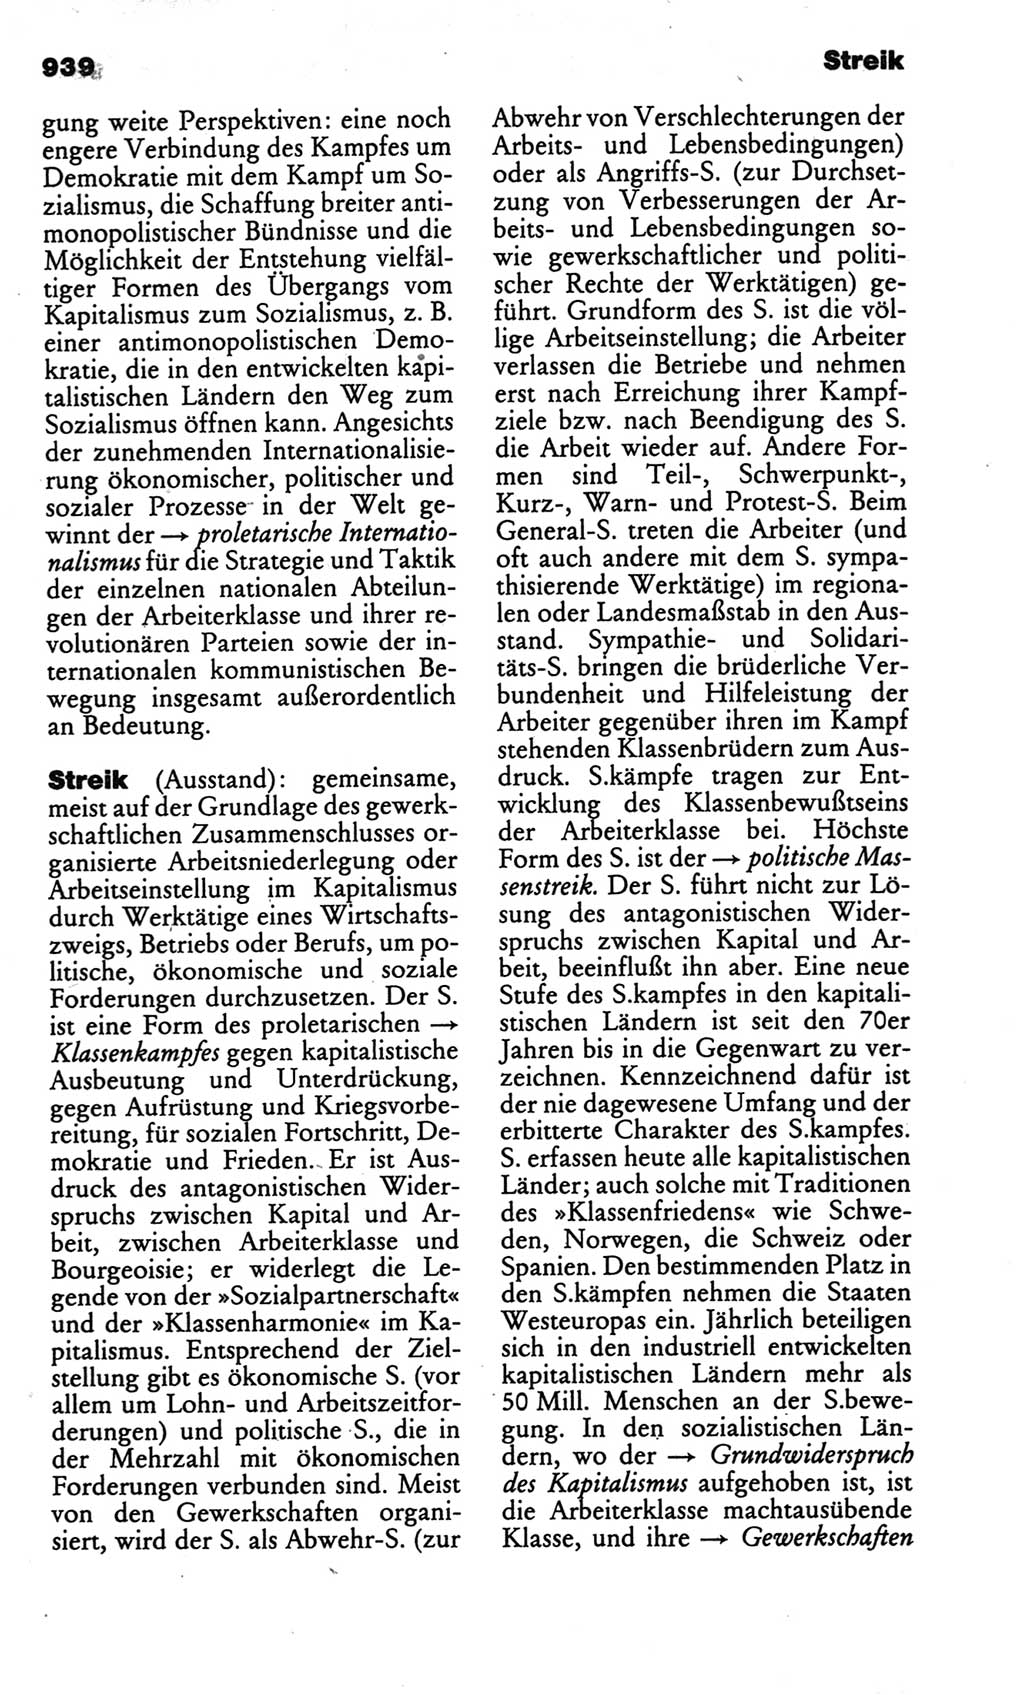 Kleines politisches Wörterbuch [Deutsche Demokratische Republik (DDR)] 1986, Seite 939 (Kl. pol. Wb. DDR 1986, S. 939)